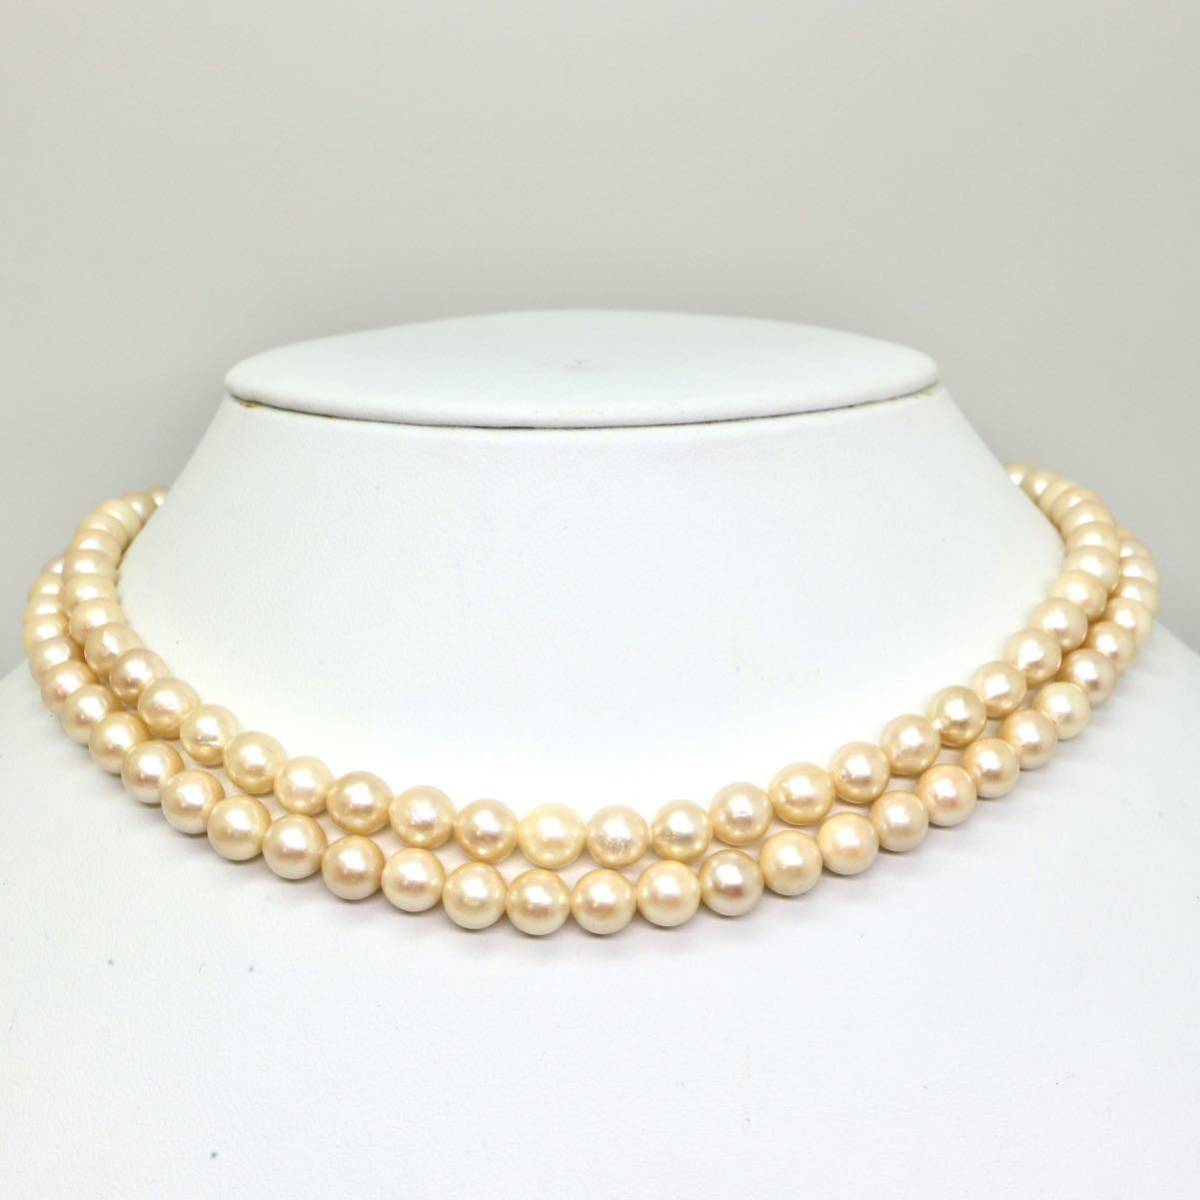 ◆アコヤ本真珠2連ネックレス◆N 40.0g 40.0cm 6.0-6.5mm珠 真珠 pearl necklace ジュエリー jewelry DA0/DA0_画像2